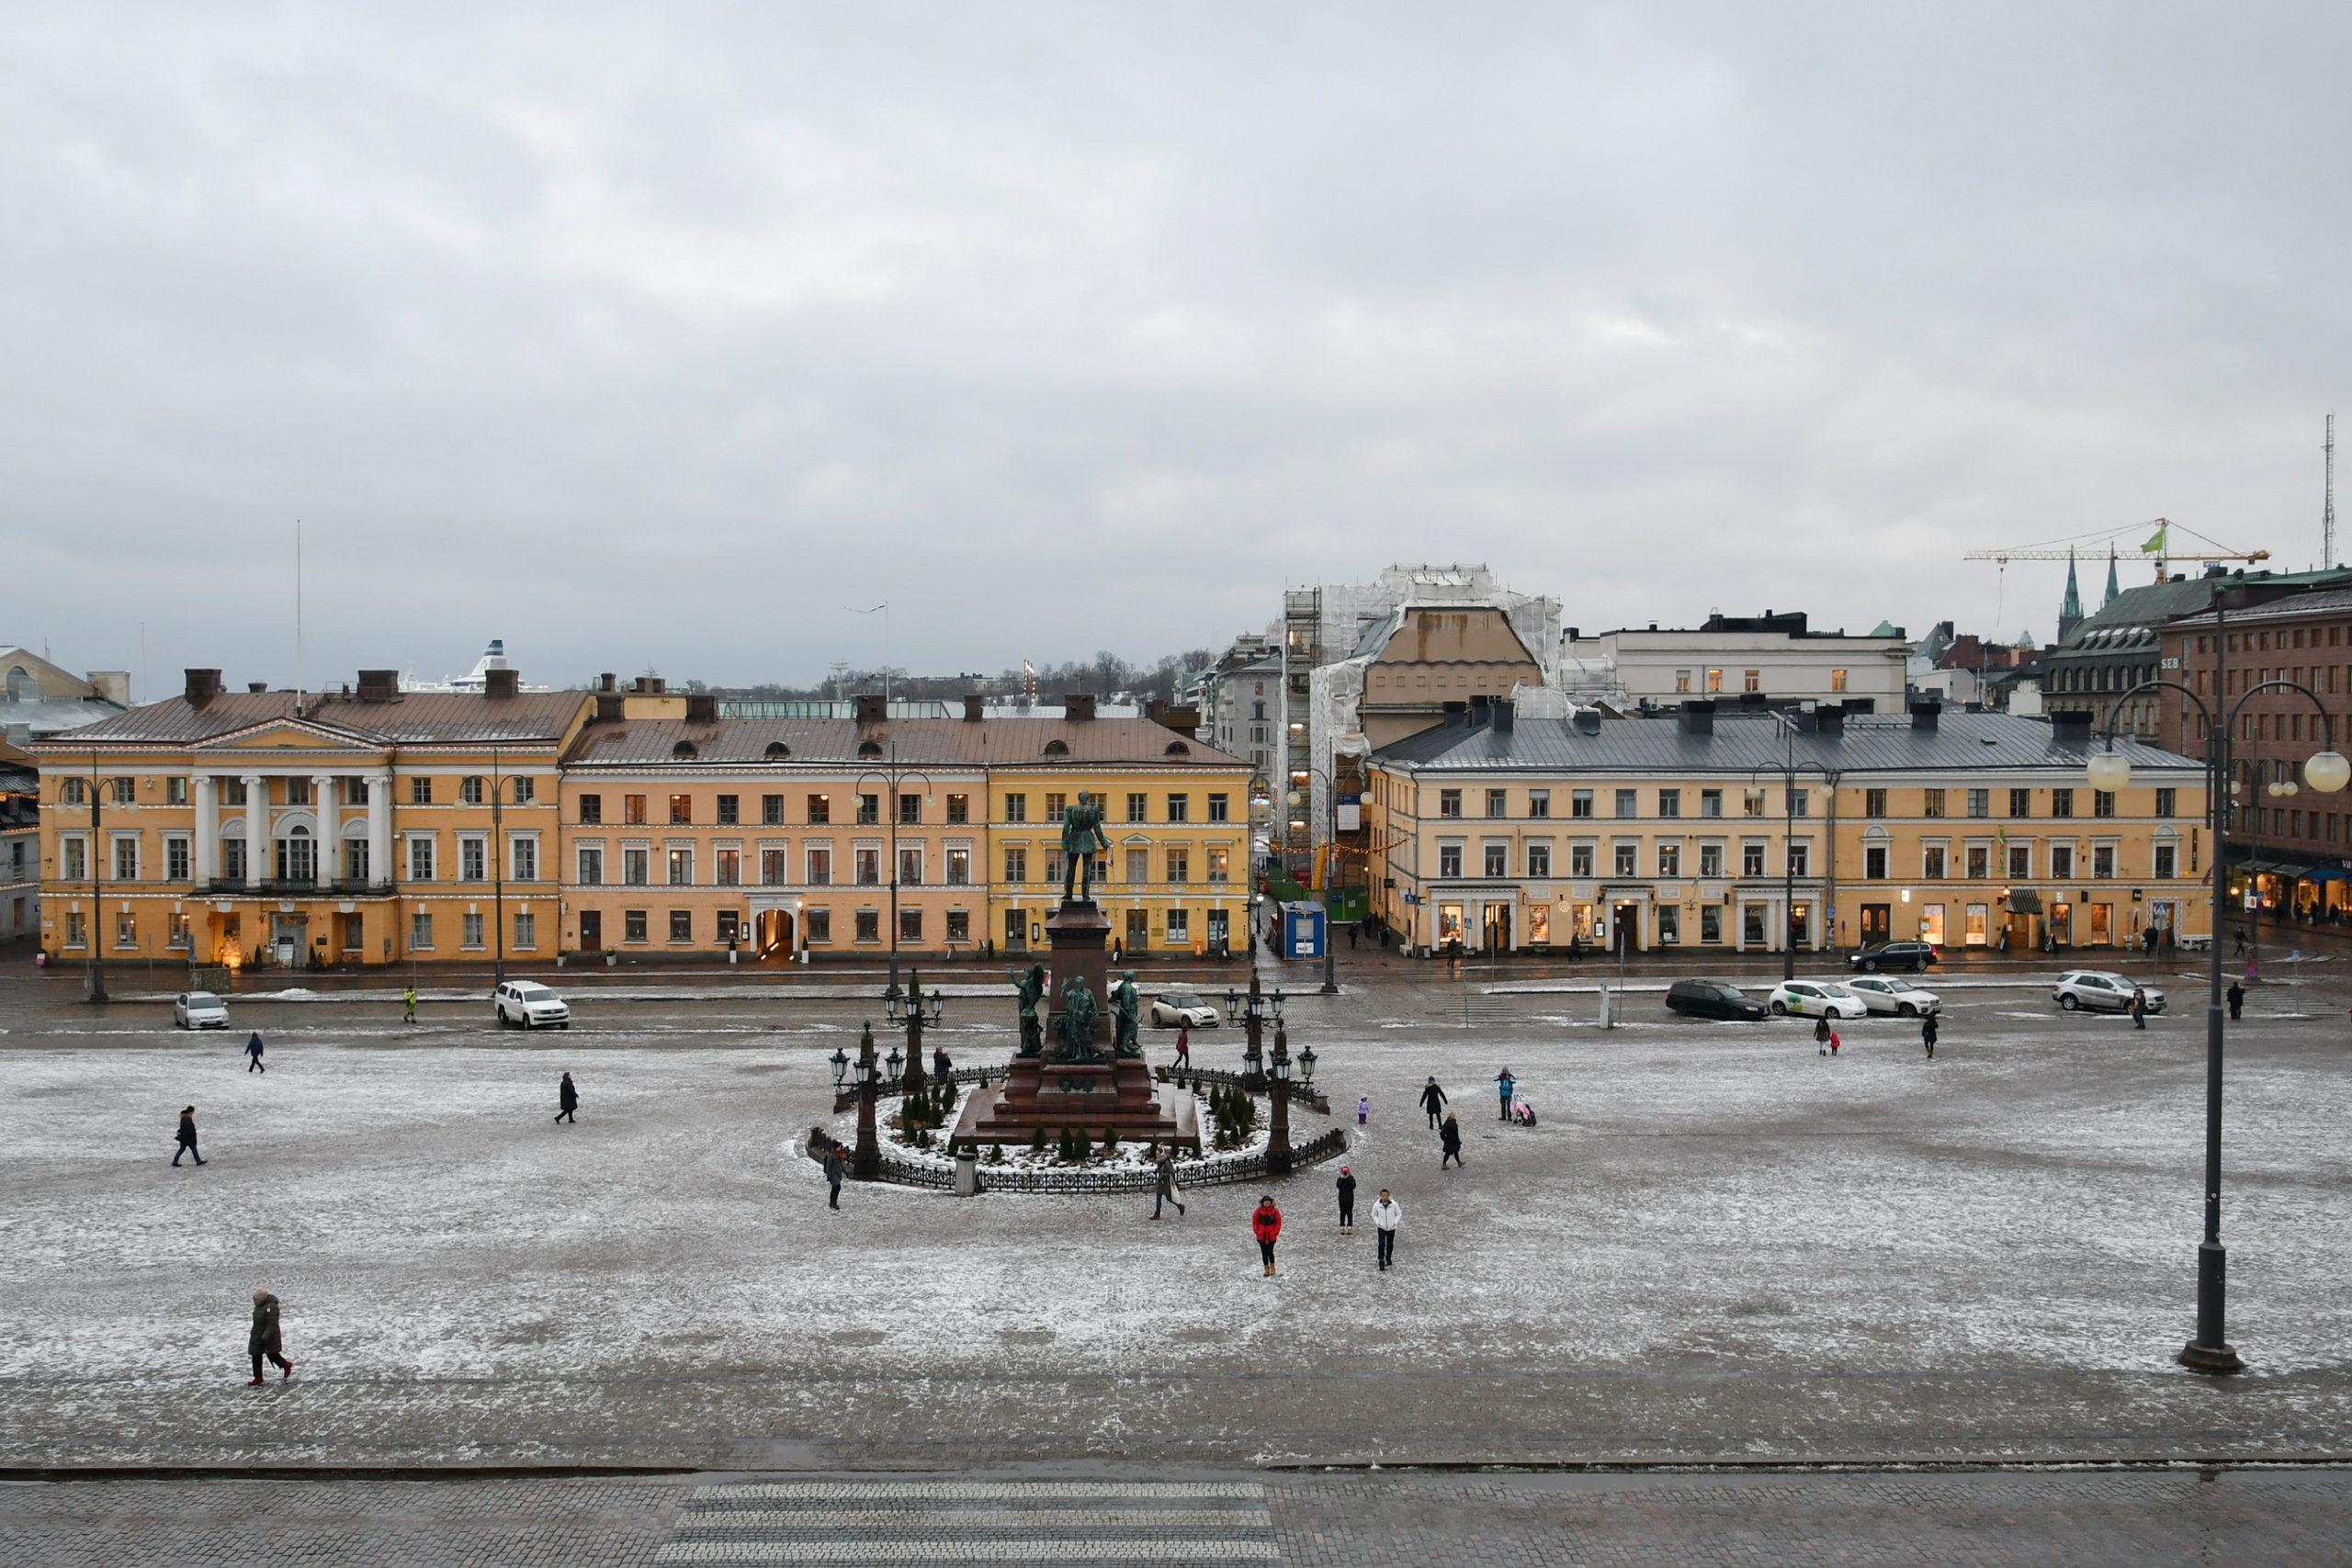 Plaza in Helsinki, Finland